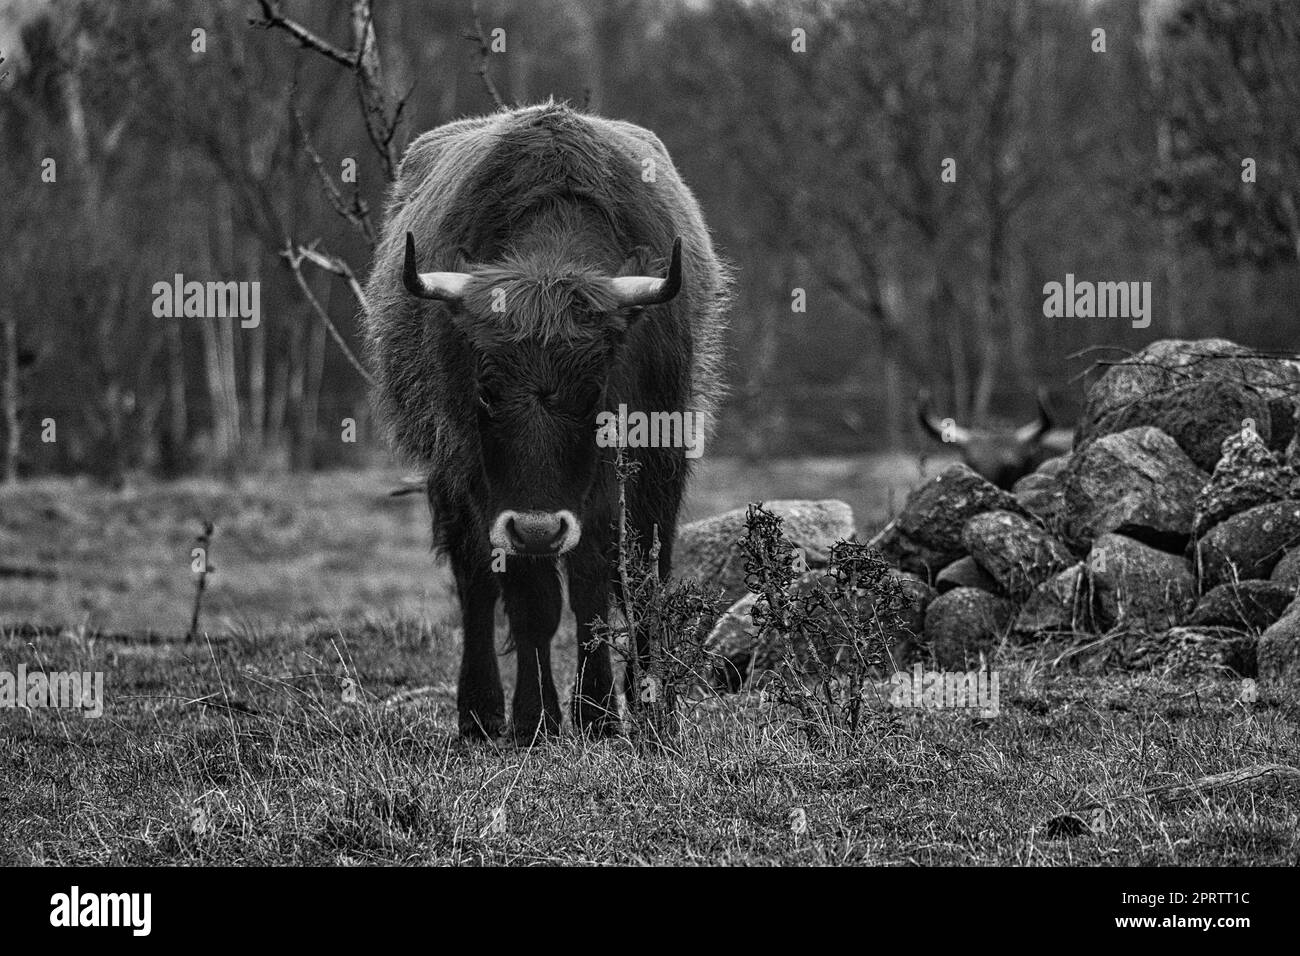 Schwarz-Weiß-Aufnahme von Hochlandrindern auf einer Wiese. Kräftige Hörner, braunes Fell. Stockfoto